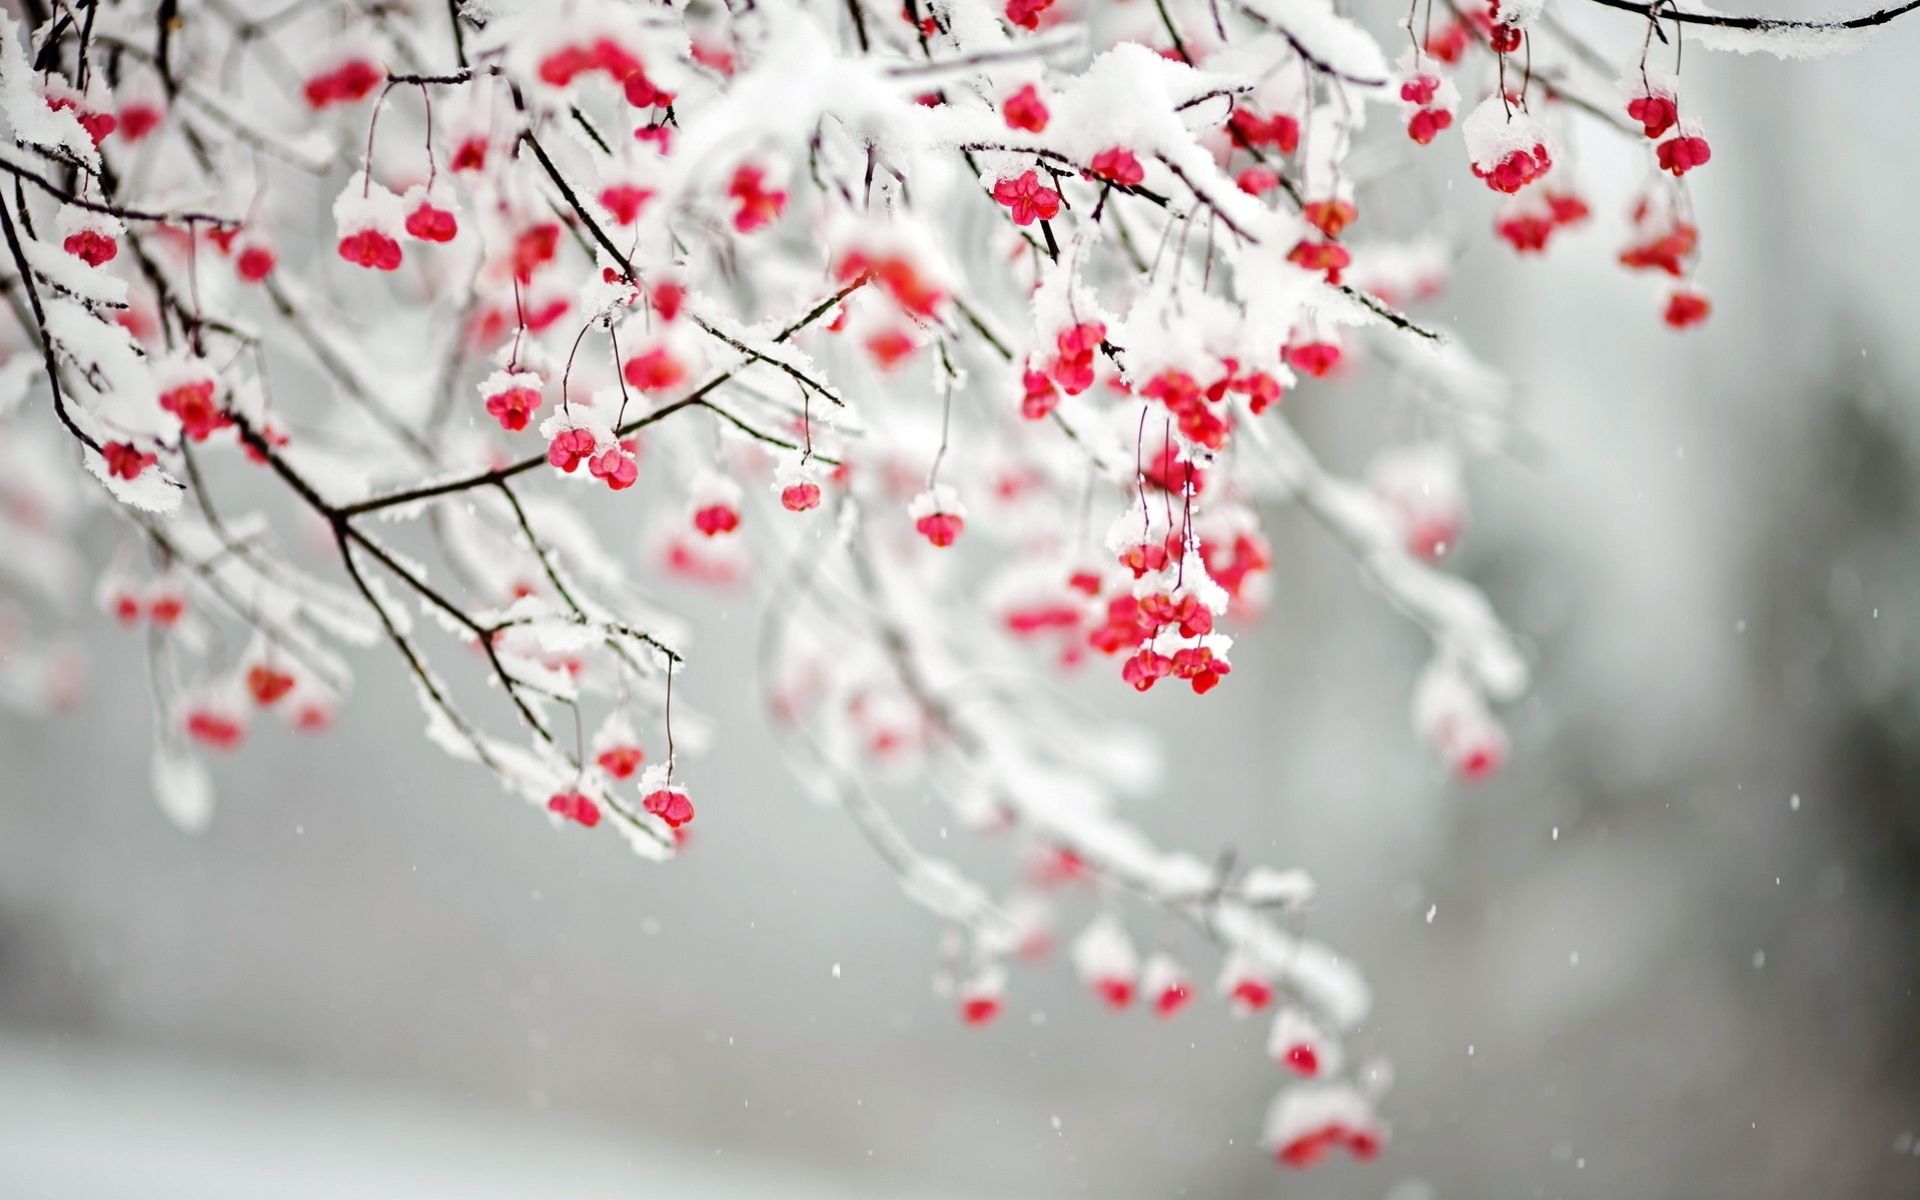 Flowers That Bloom in Winter Wallpaper. Cute Winter Wallpaper, Winter Wallpaper and Christmas Winter Wallpaper